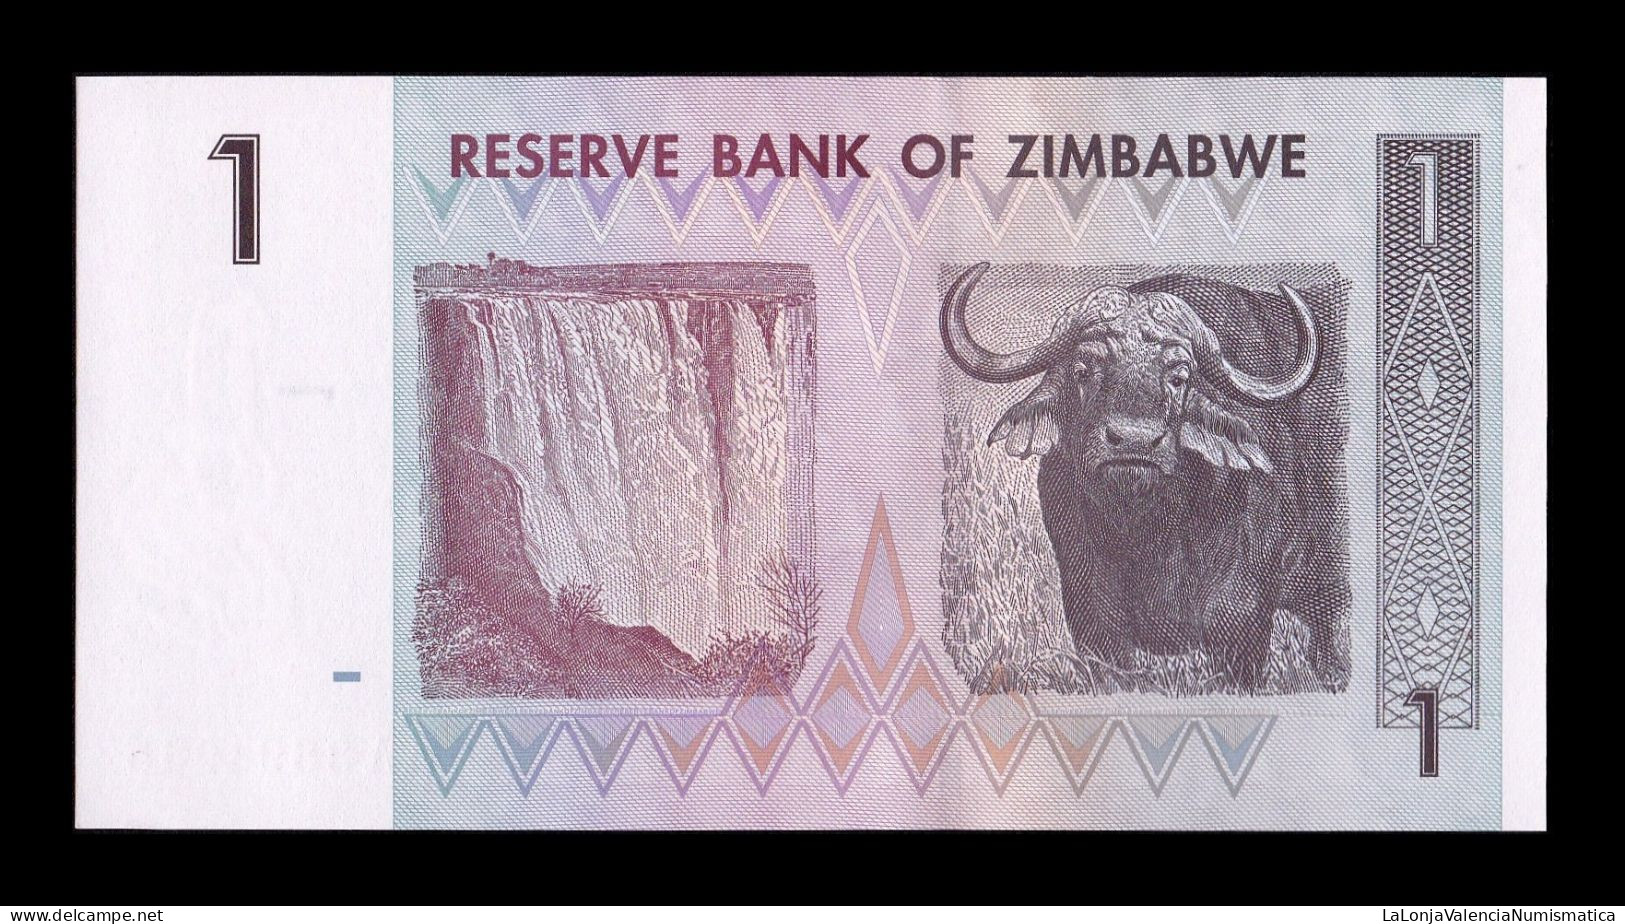 Zimbabwe 1 Dollar 2007 Pick 65 Sc Unc - Simbabwe